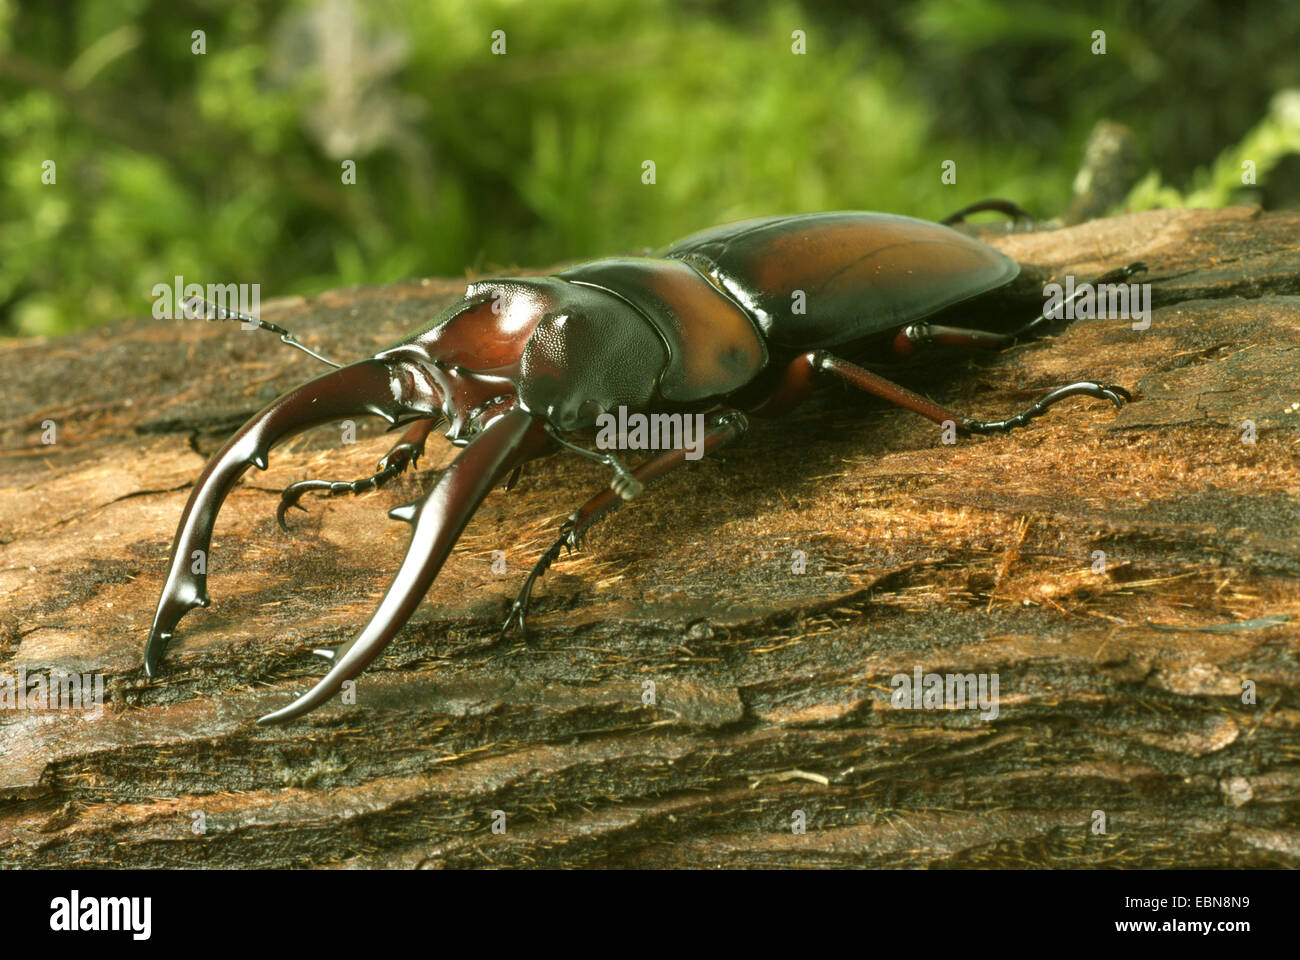 Stag beetle (Prosopocoilus mirabilis), homme, close-up view Banque D'Images